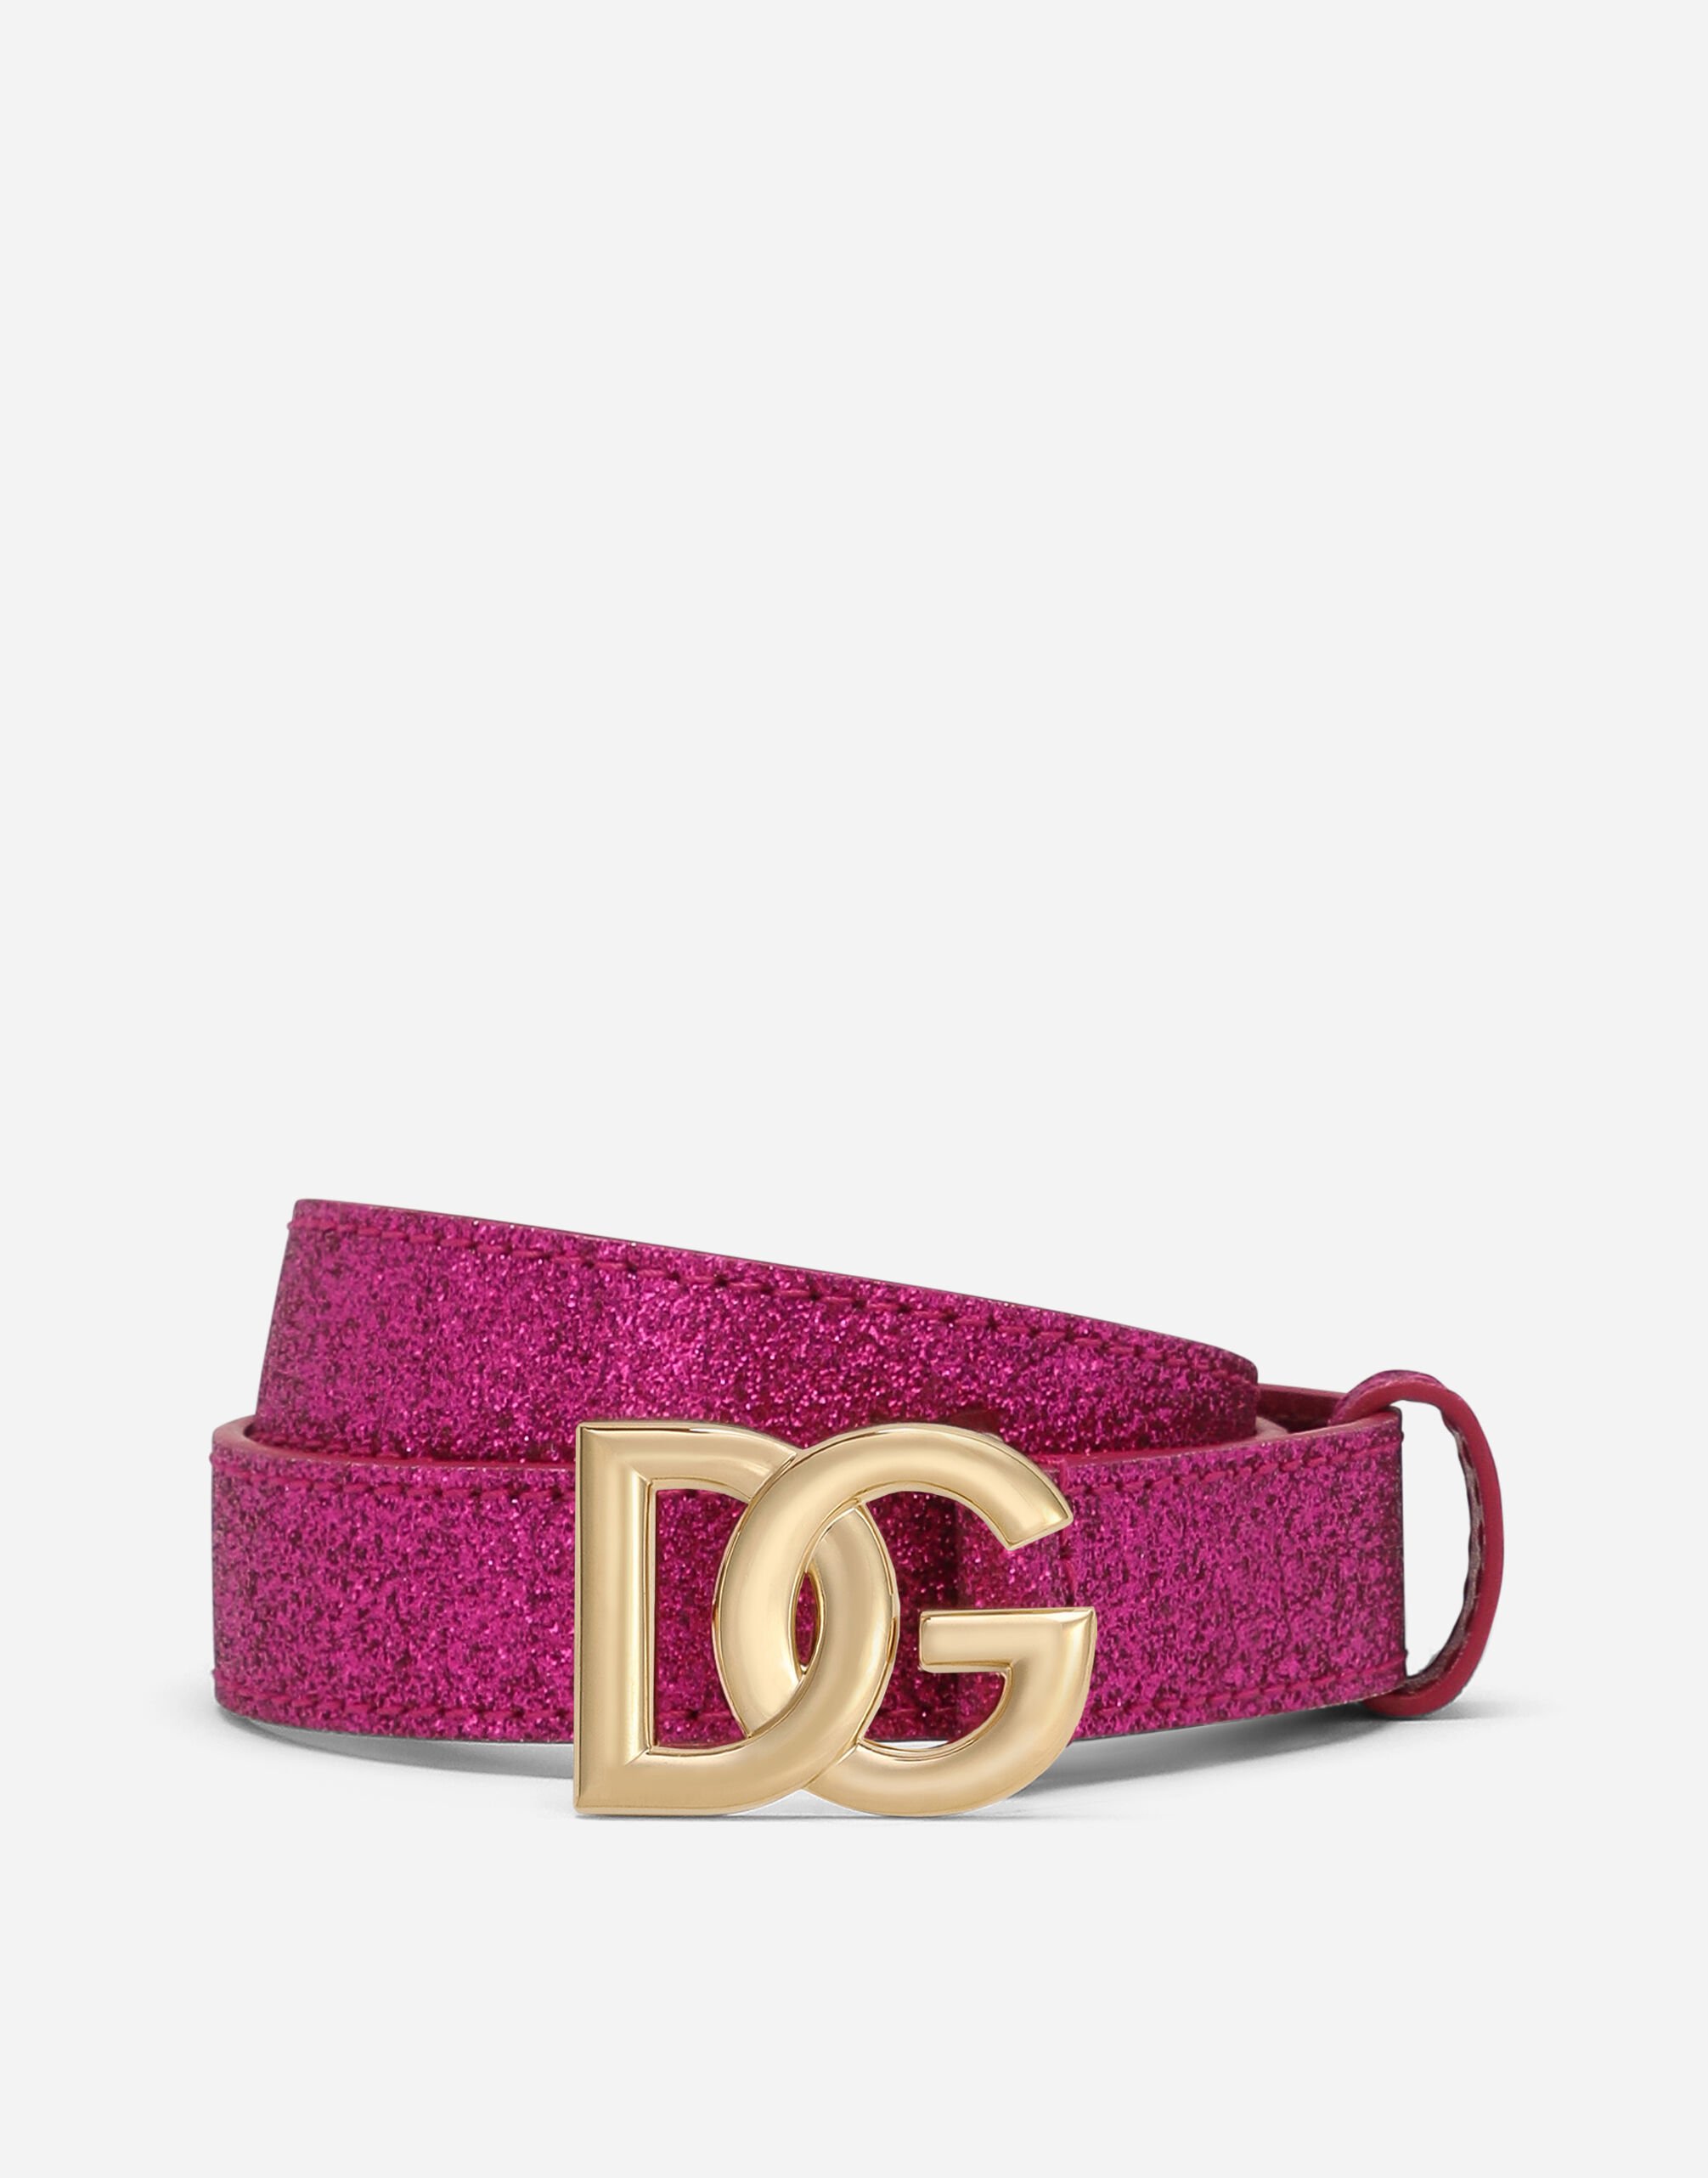 Dolce & Gabbana DG logo belt Fuchsia EB0003AW814